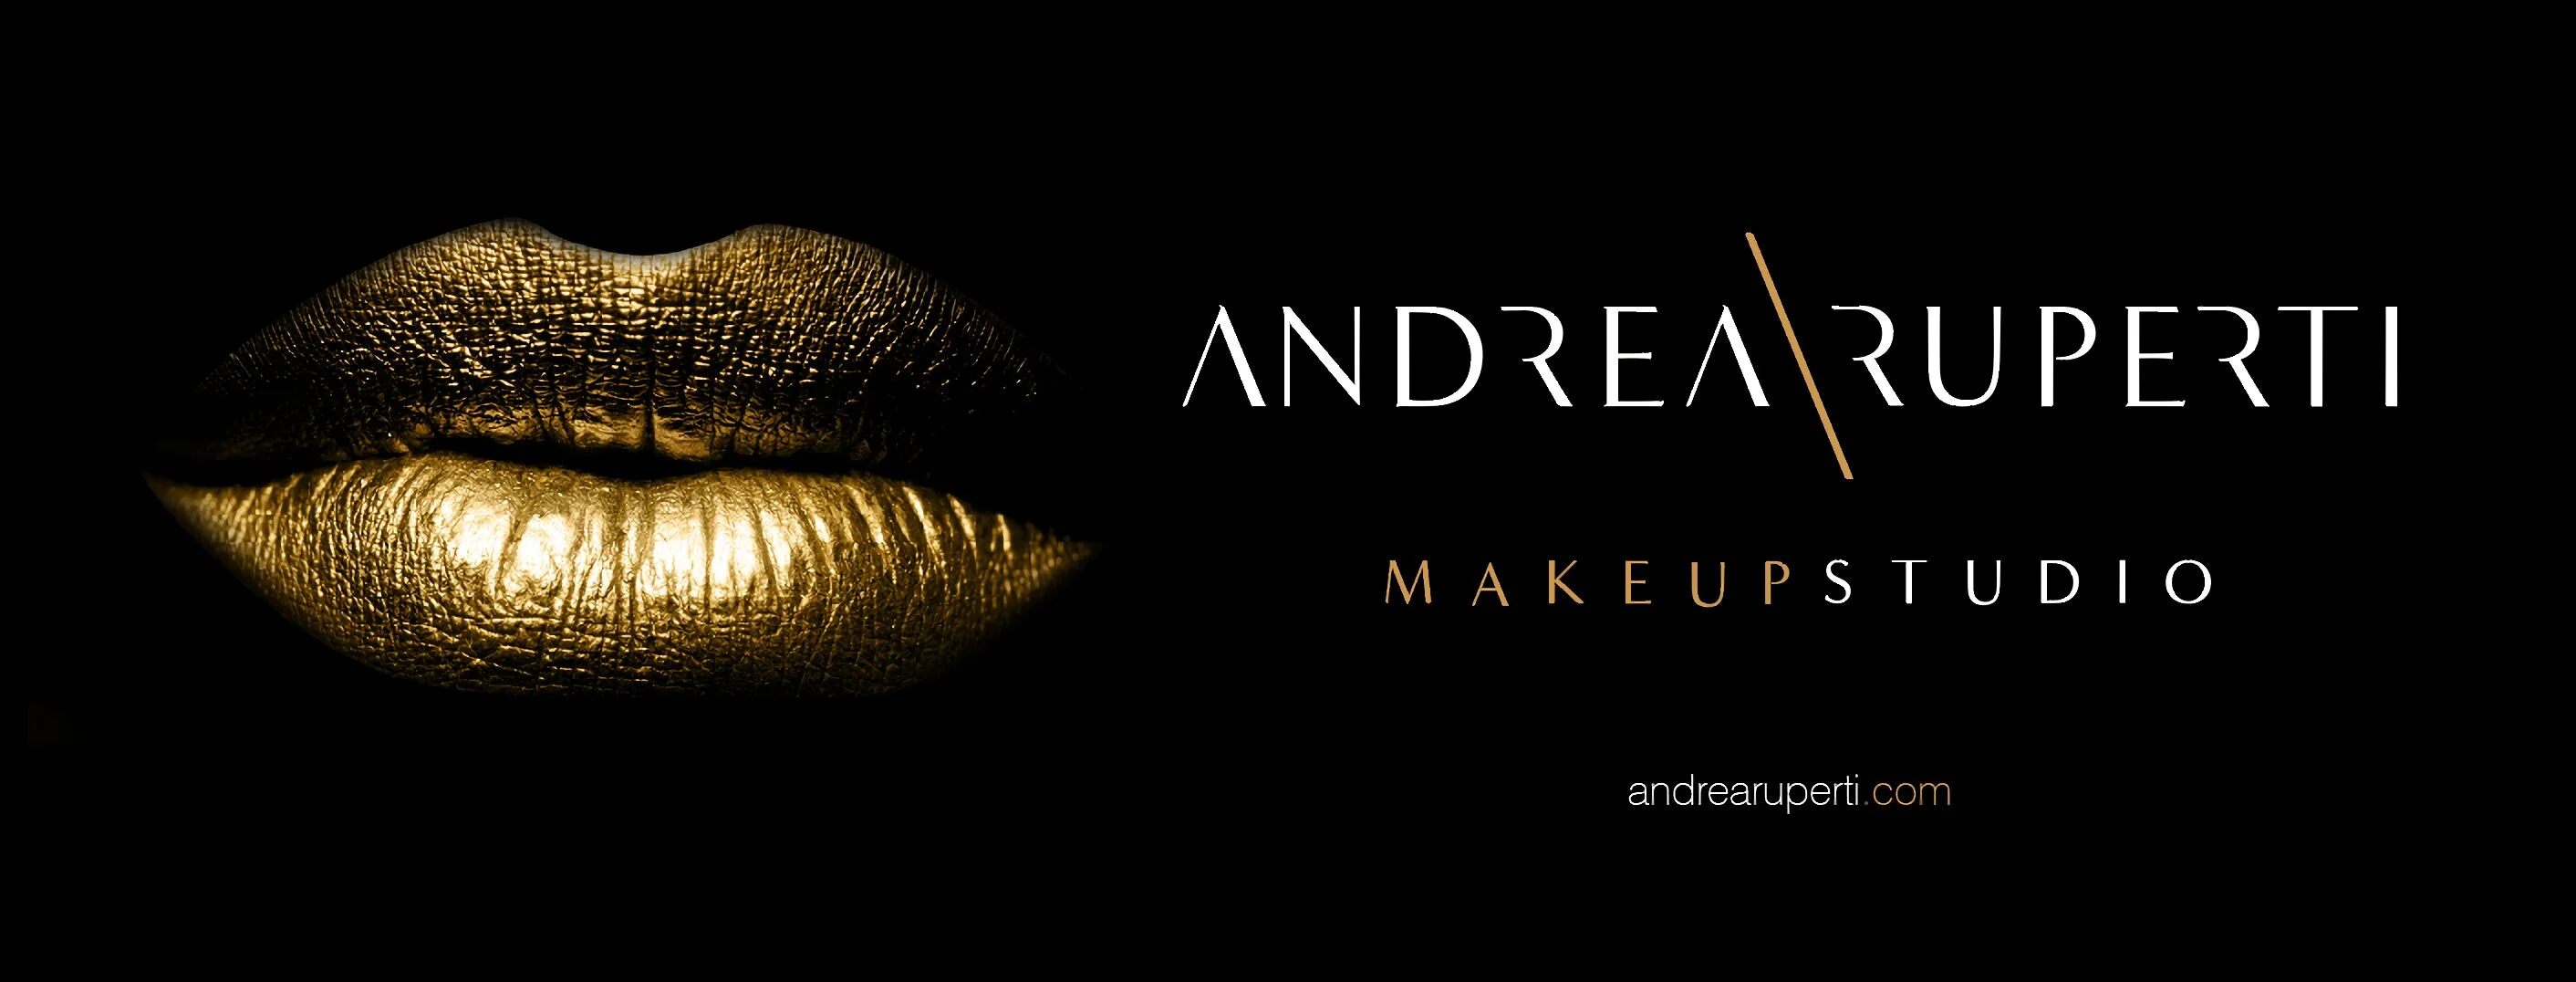 Andrea Makeup-2790